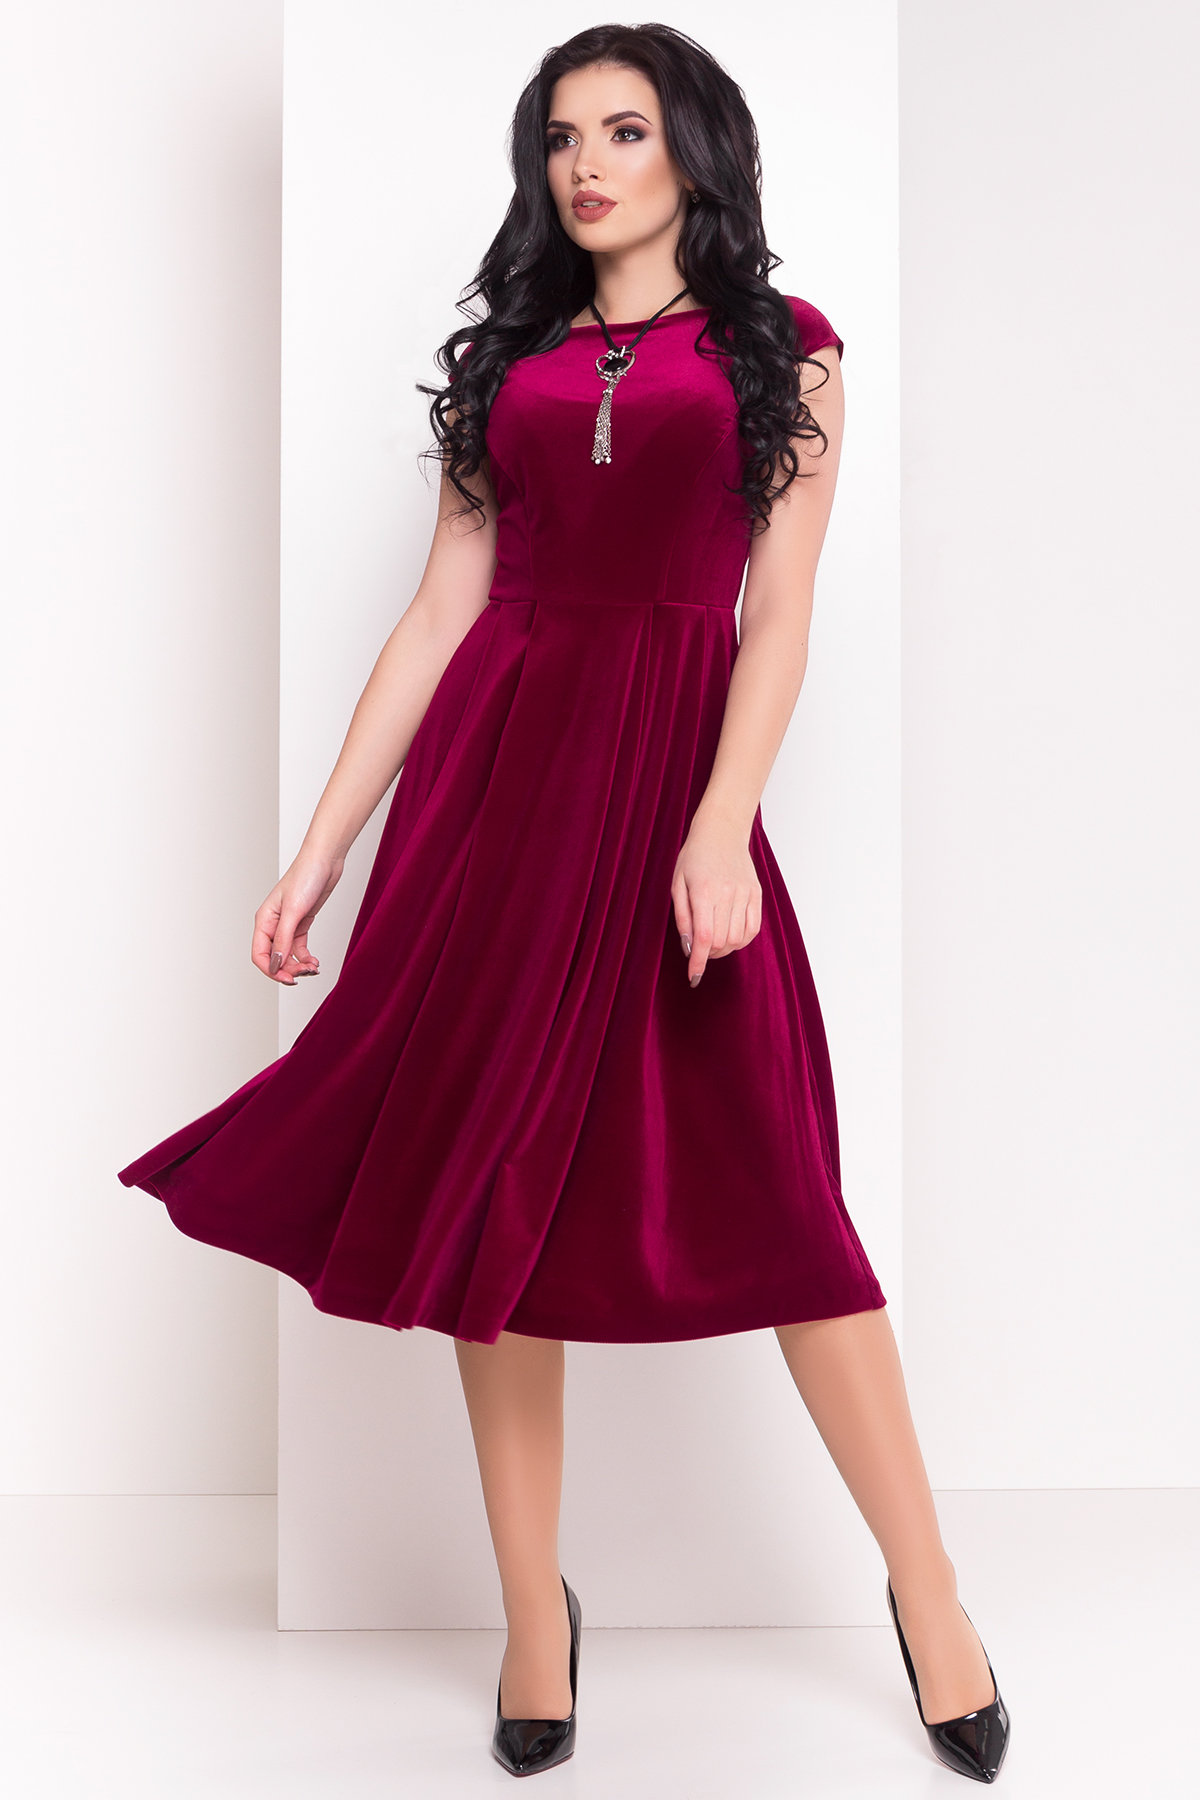 Платье Лира 4125 АРТ. 20785 Цвет: Марсала - фото 1, интернет магазин tm-modus.ru